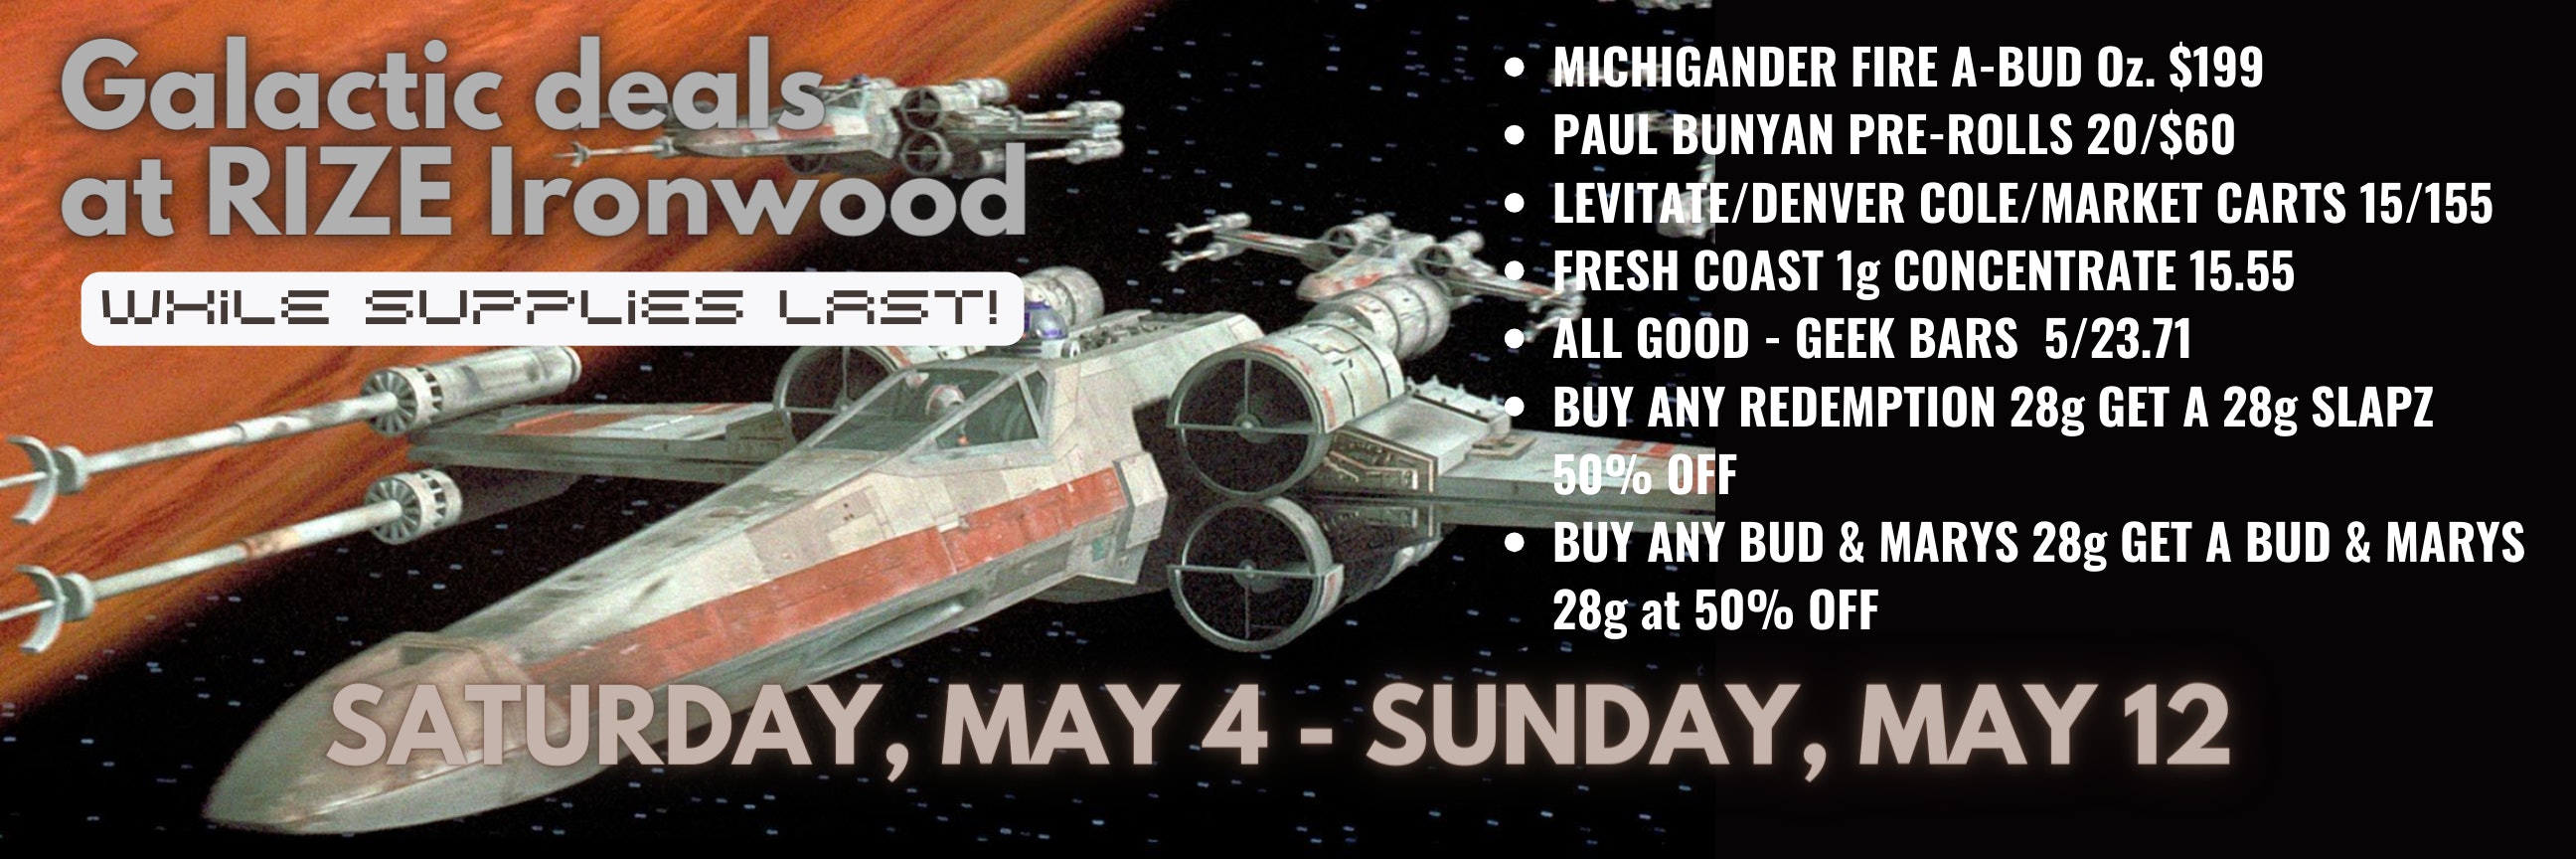 May 4 - May 12 Star Wars Event